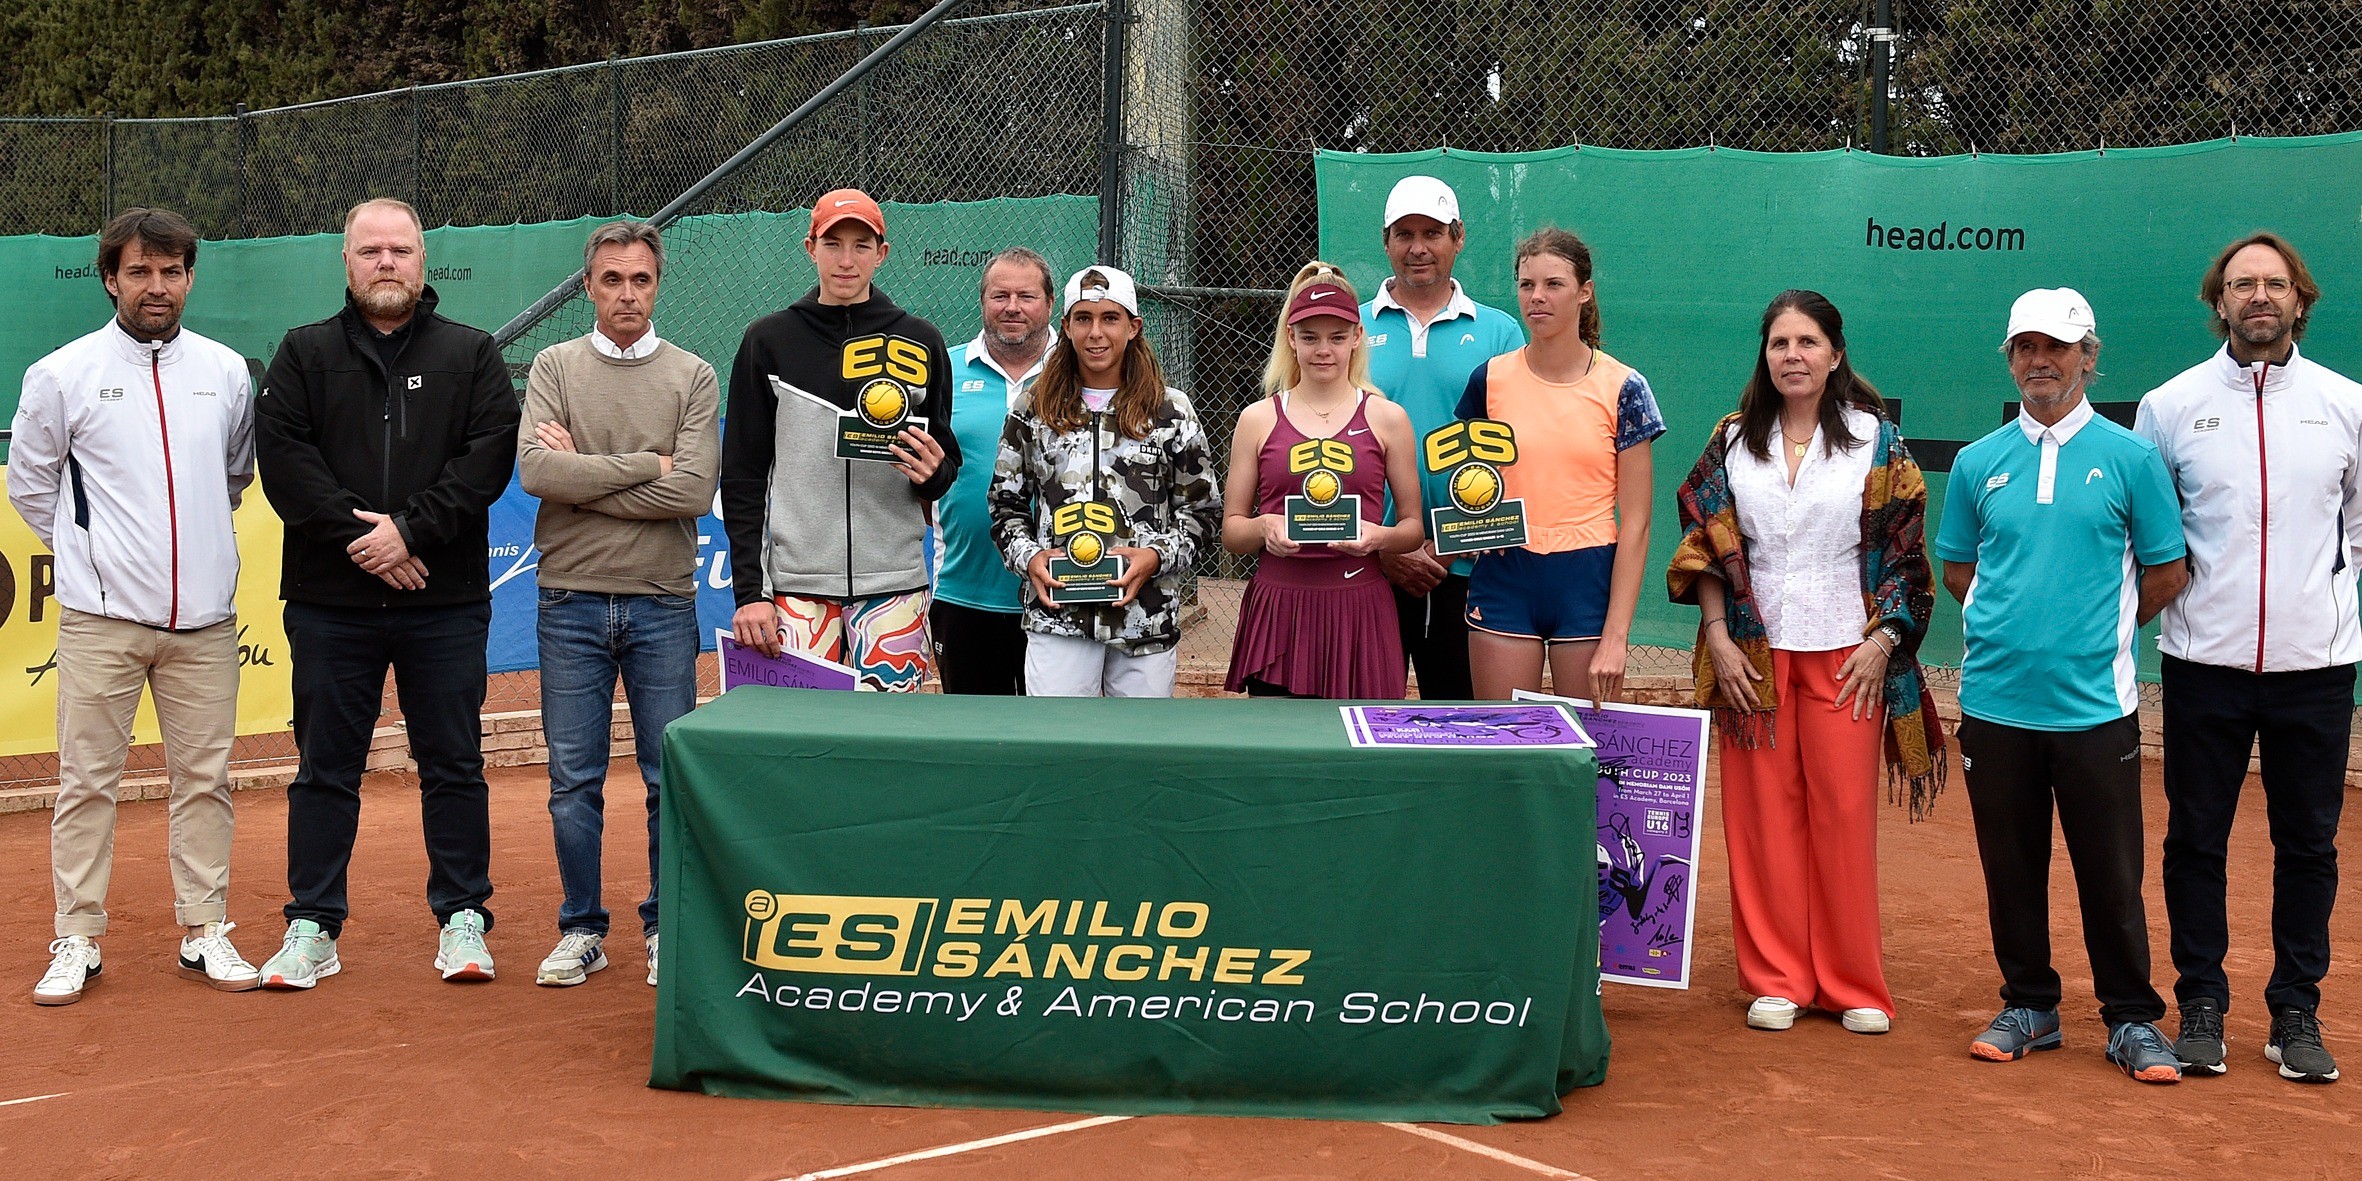 Dmytro Vterkovskyi y Giuli Popa vencen en el U16 Tennis Europe Emilio Sánchez Academy, Dani Usón In memoriam